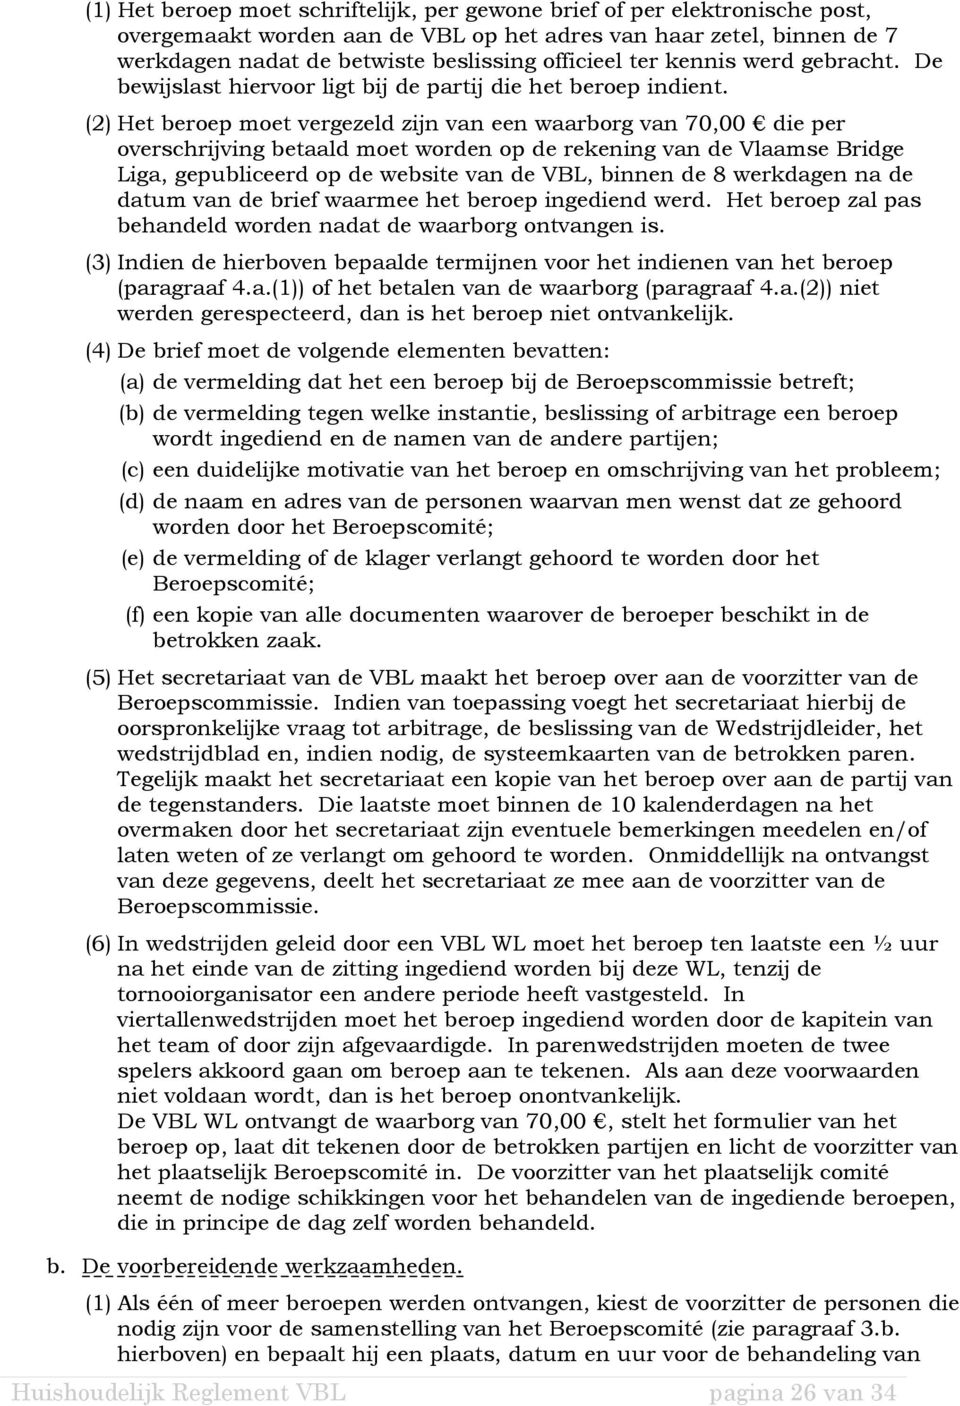 (2) Het beroep moet vergezeld zijn van een waarborg van 70,00 die per overschrijving betaald moet worden op de rekening van de Vlaamse Bridge Liga, gepubliceerd op de website van de VBL, binnen de 8